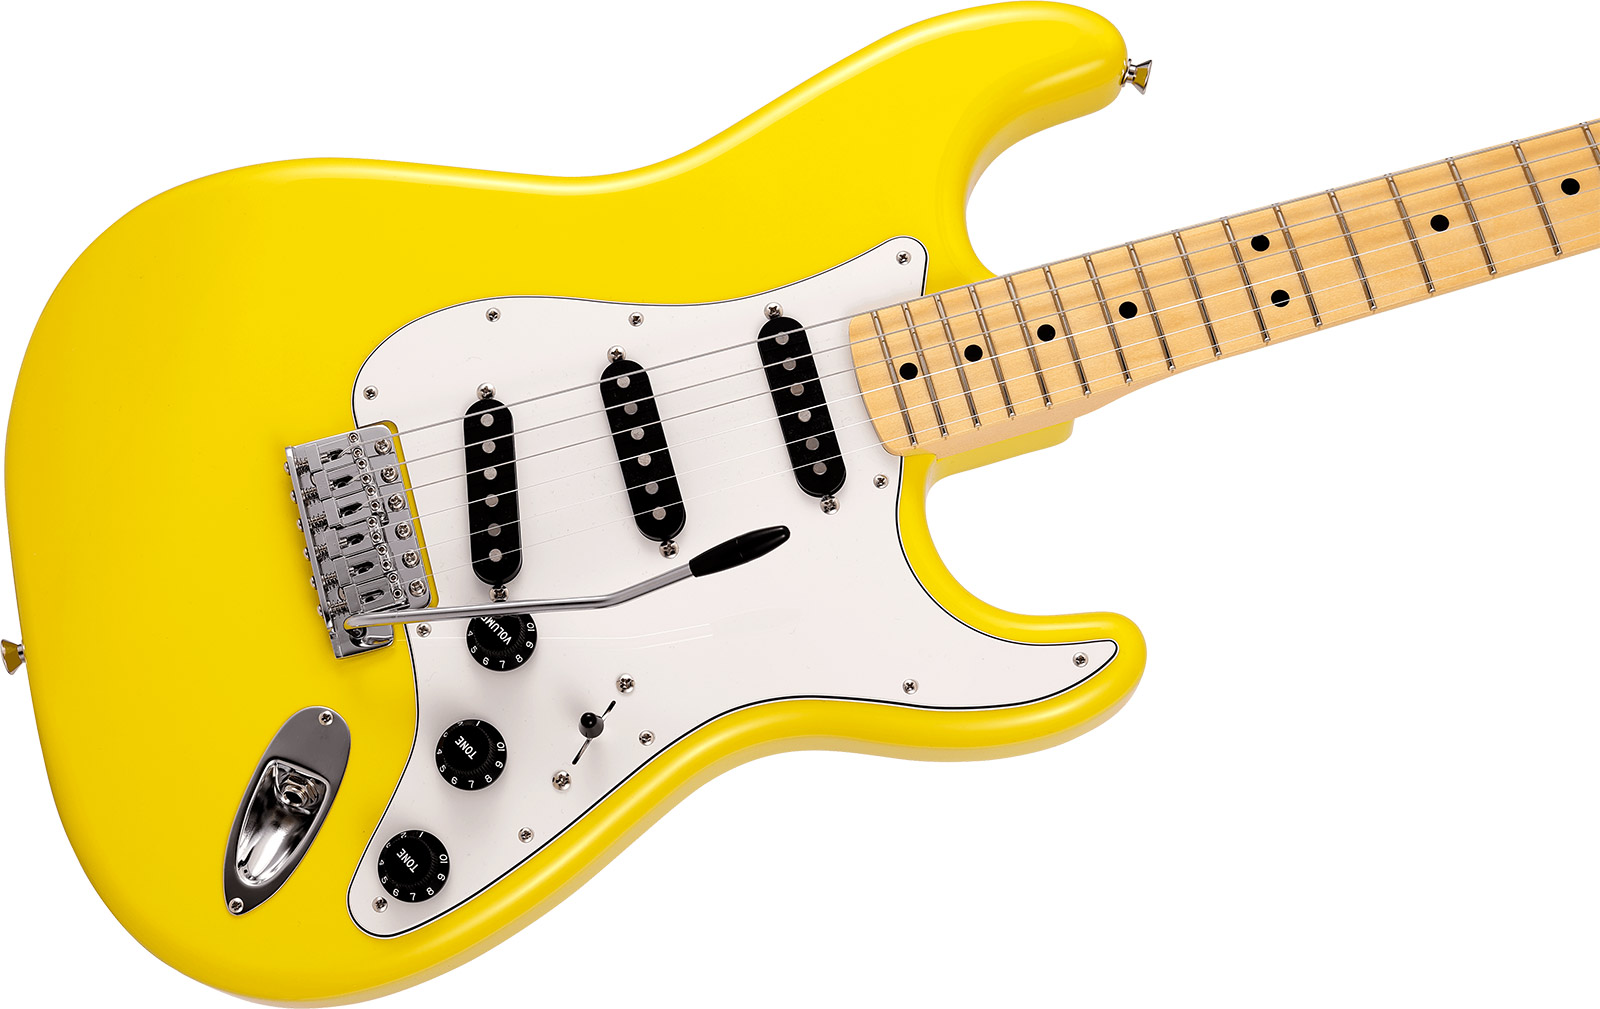 Fender Strat International Color Ltd Jap 3s Trem Mn - Monaco Yellow - Guitare Électrique Forme Str - Variation 2